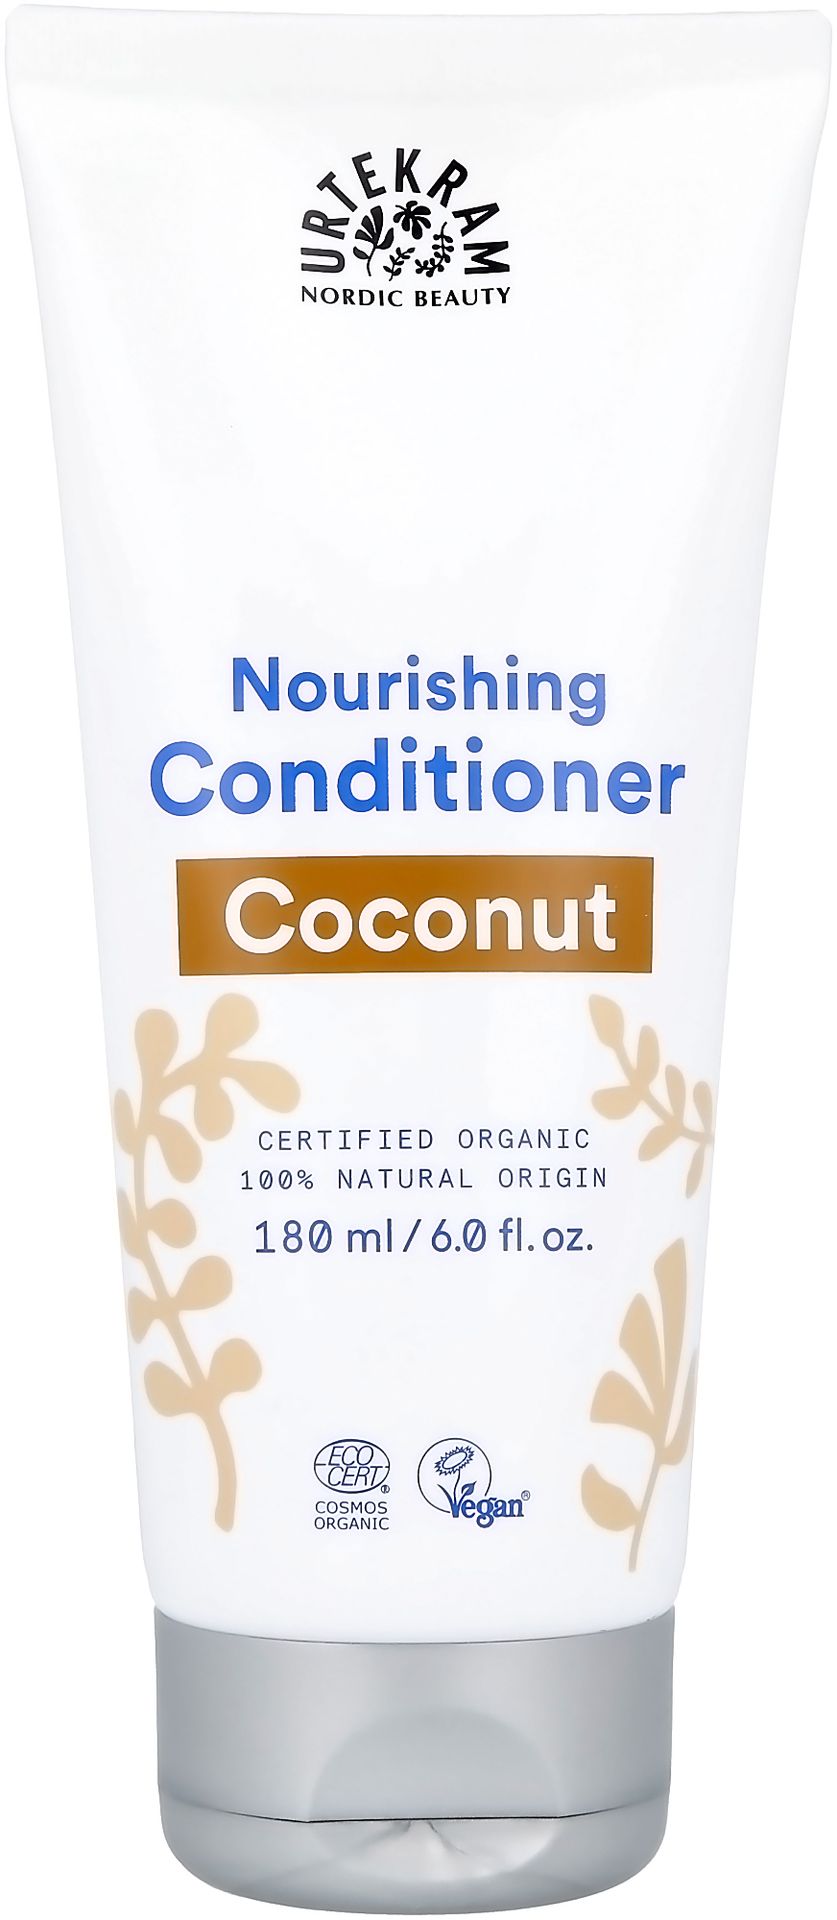 Bio urte Kram kokos Conditioner normalna do włosów, 170 ML 83910